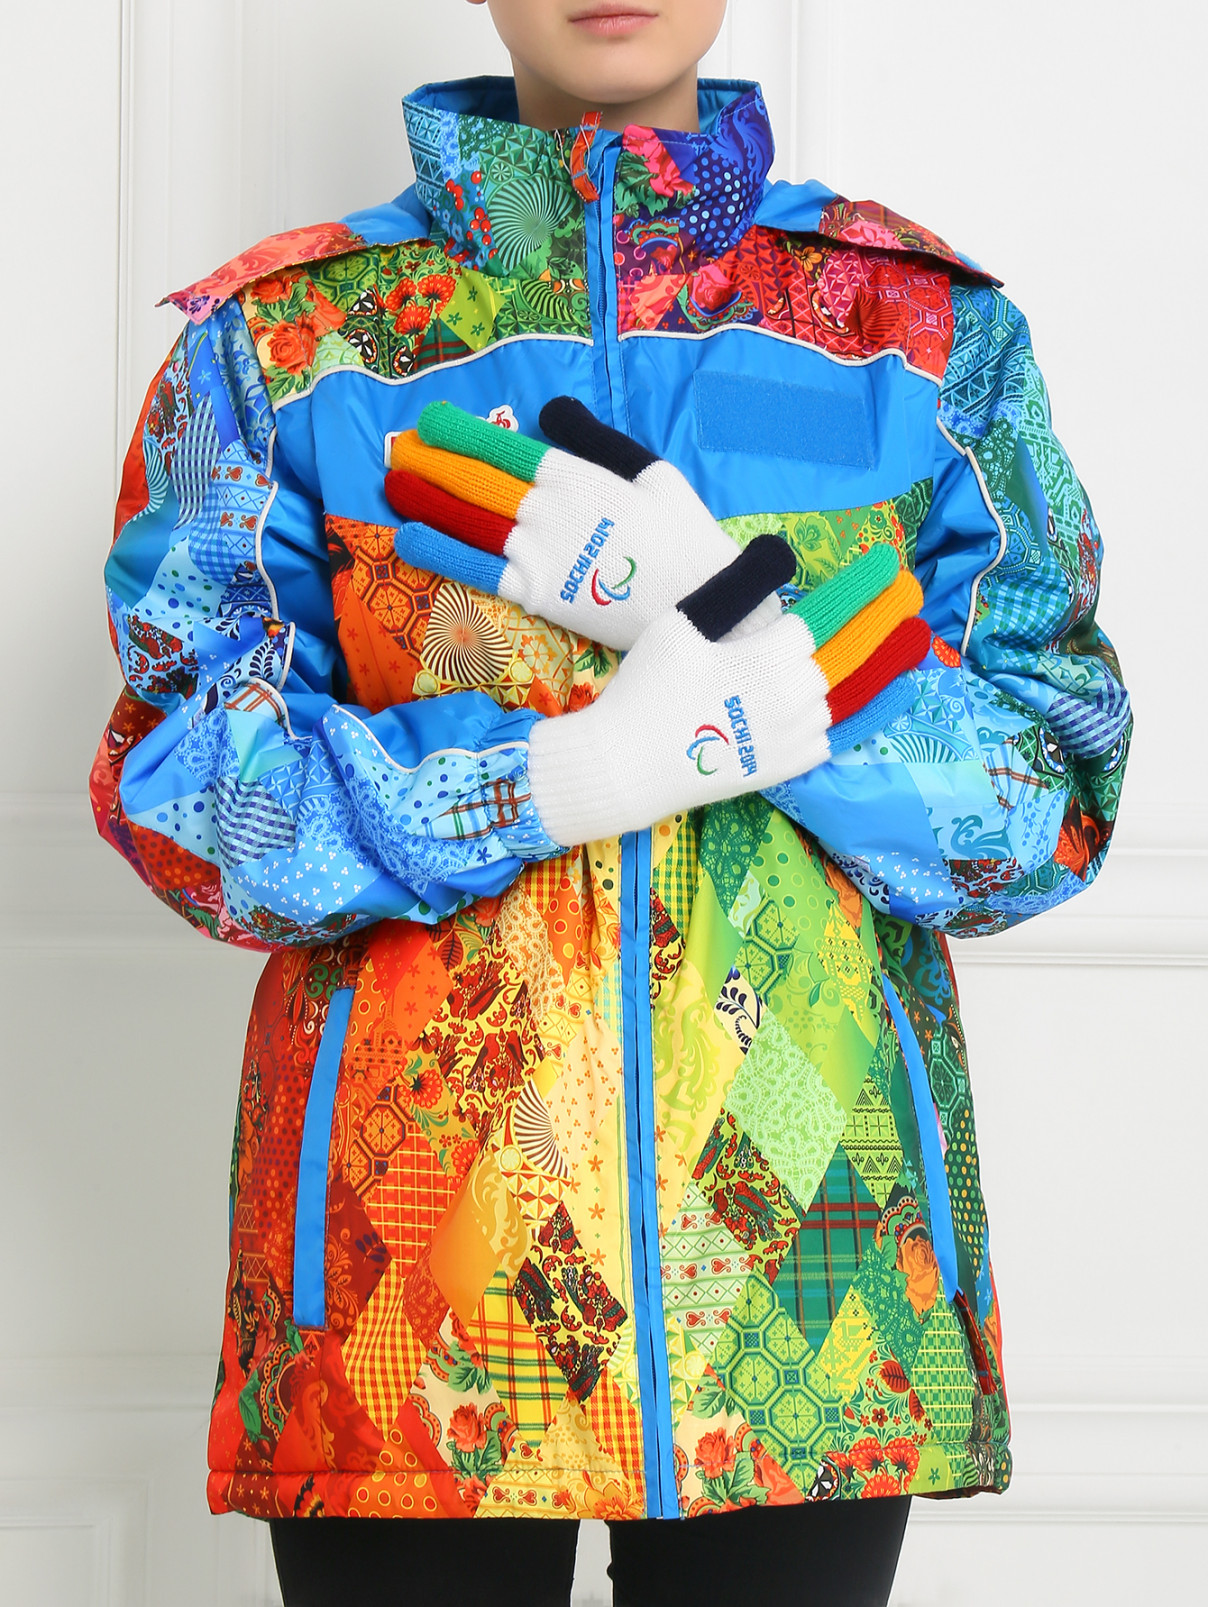 Перчатки с вышивкой Sochi 2014  –  Модель Общий вид  – Цвет:  Белый